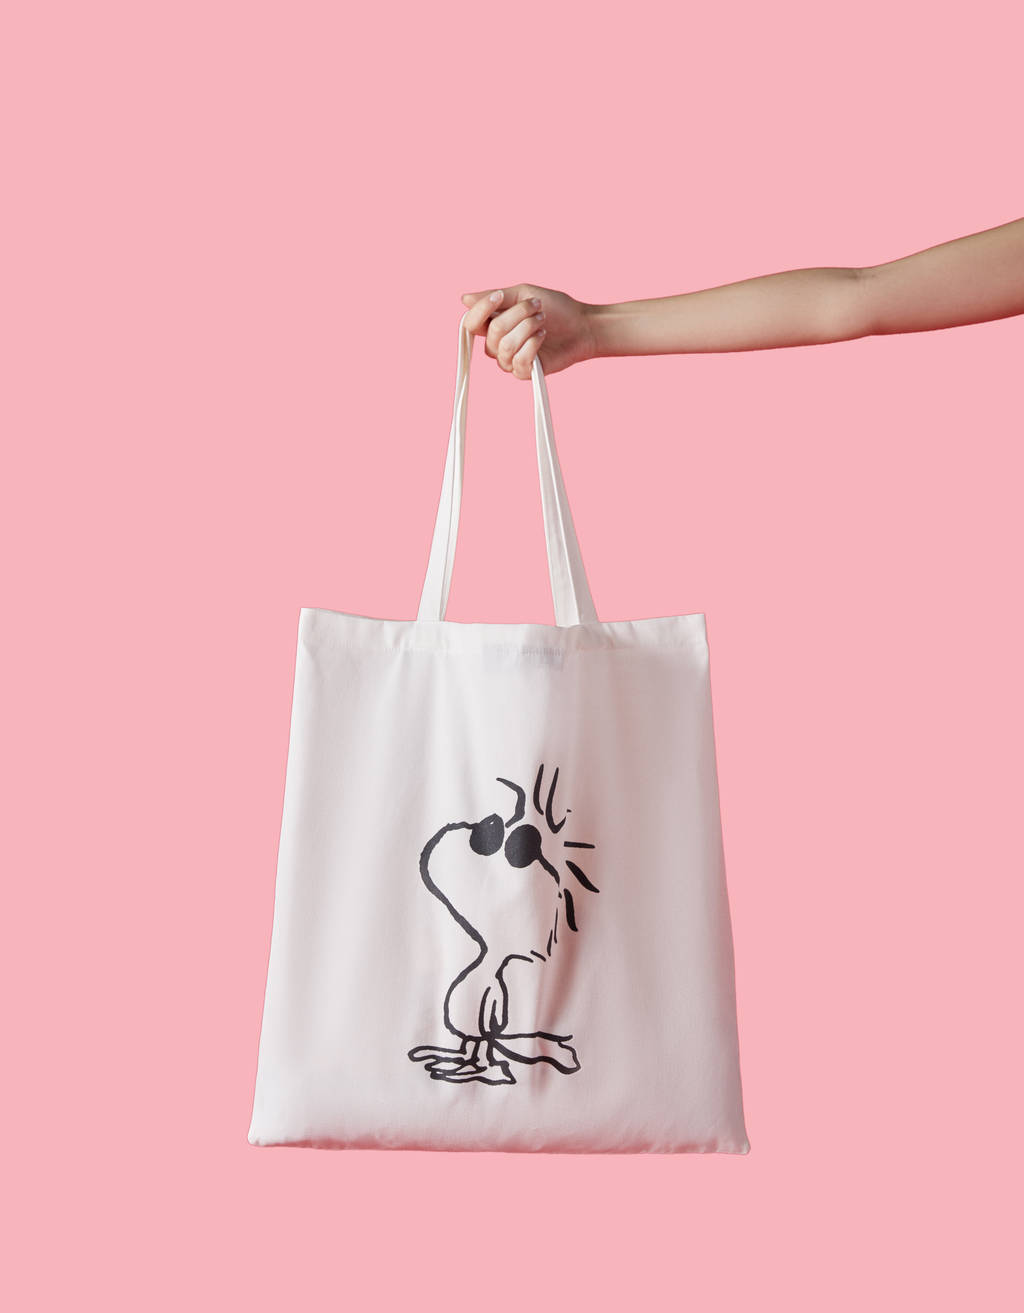 Bershka lanza una colección limitada protagonizada por Snoopy